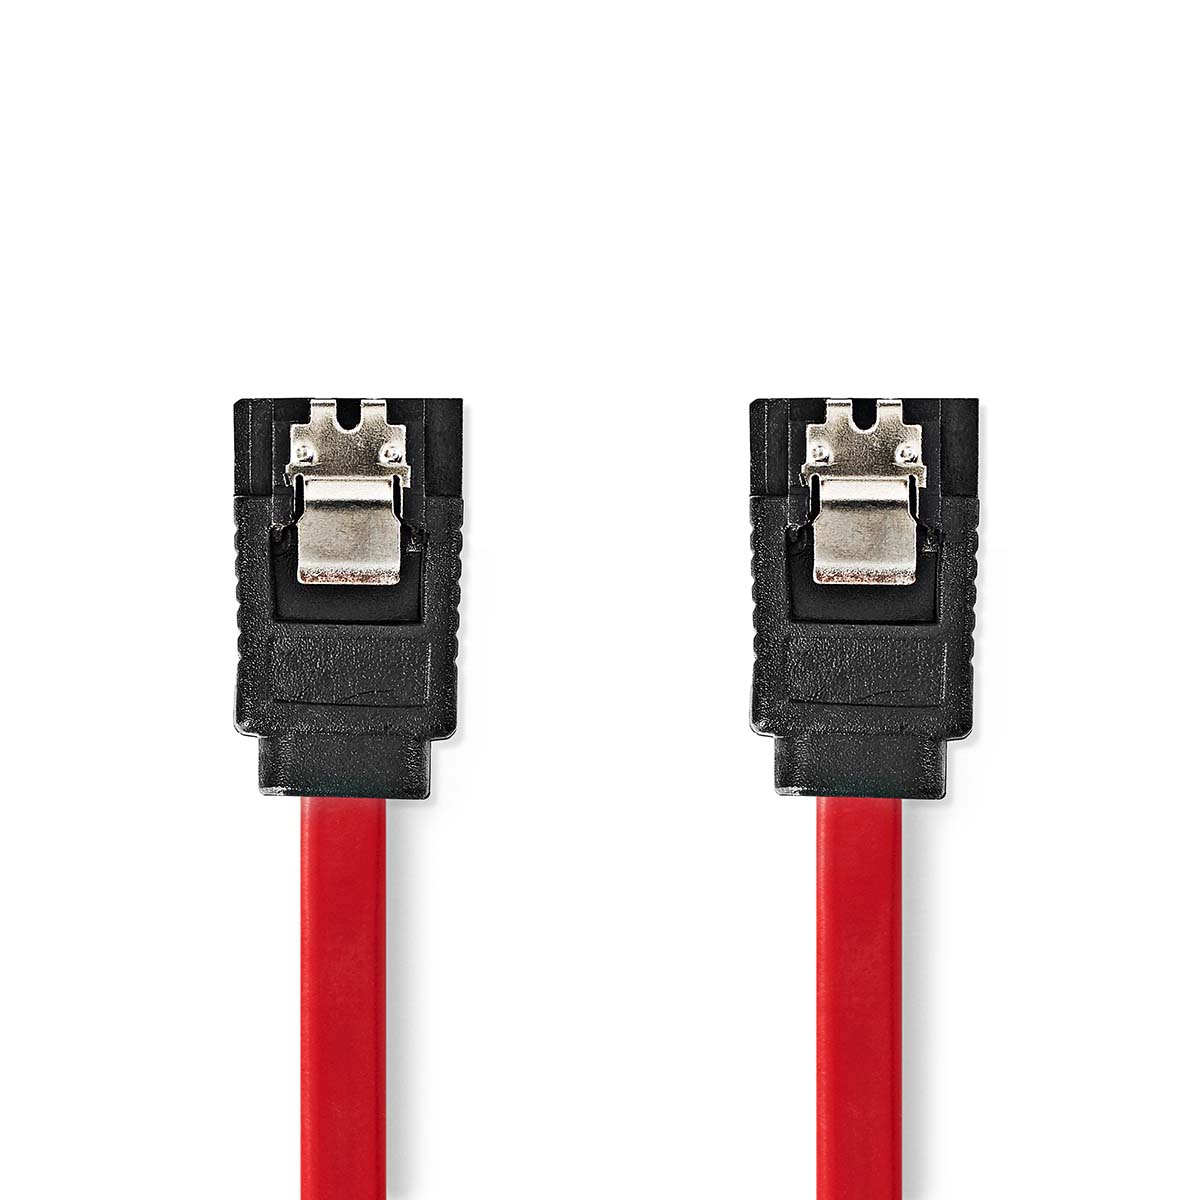 SATA kabel 1.5 Gbps | SATA 7-Pin Hun | SATA 7-Pin Hun 50cm